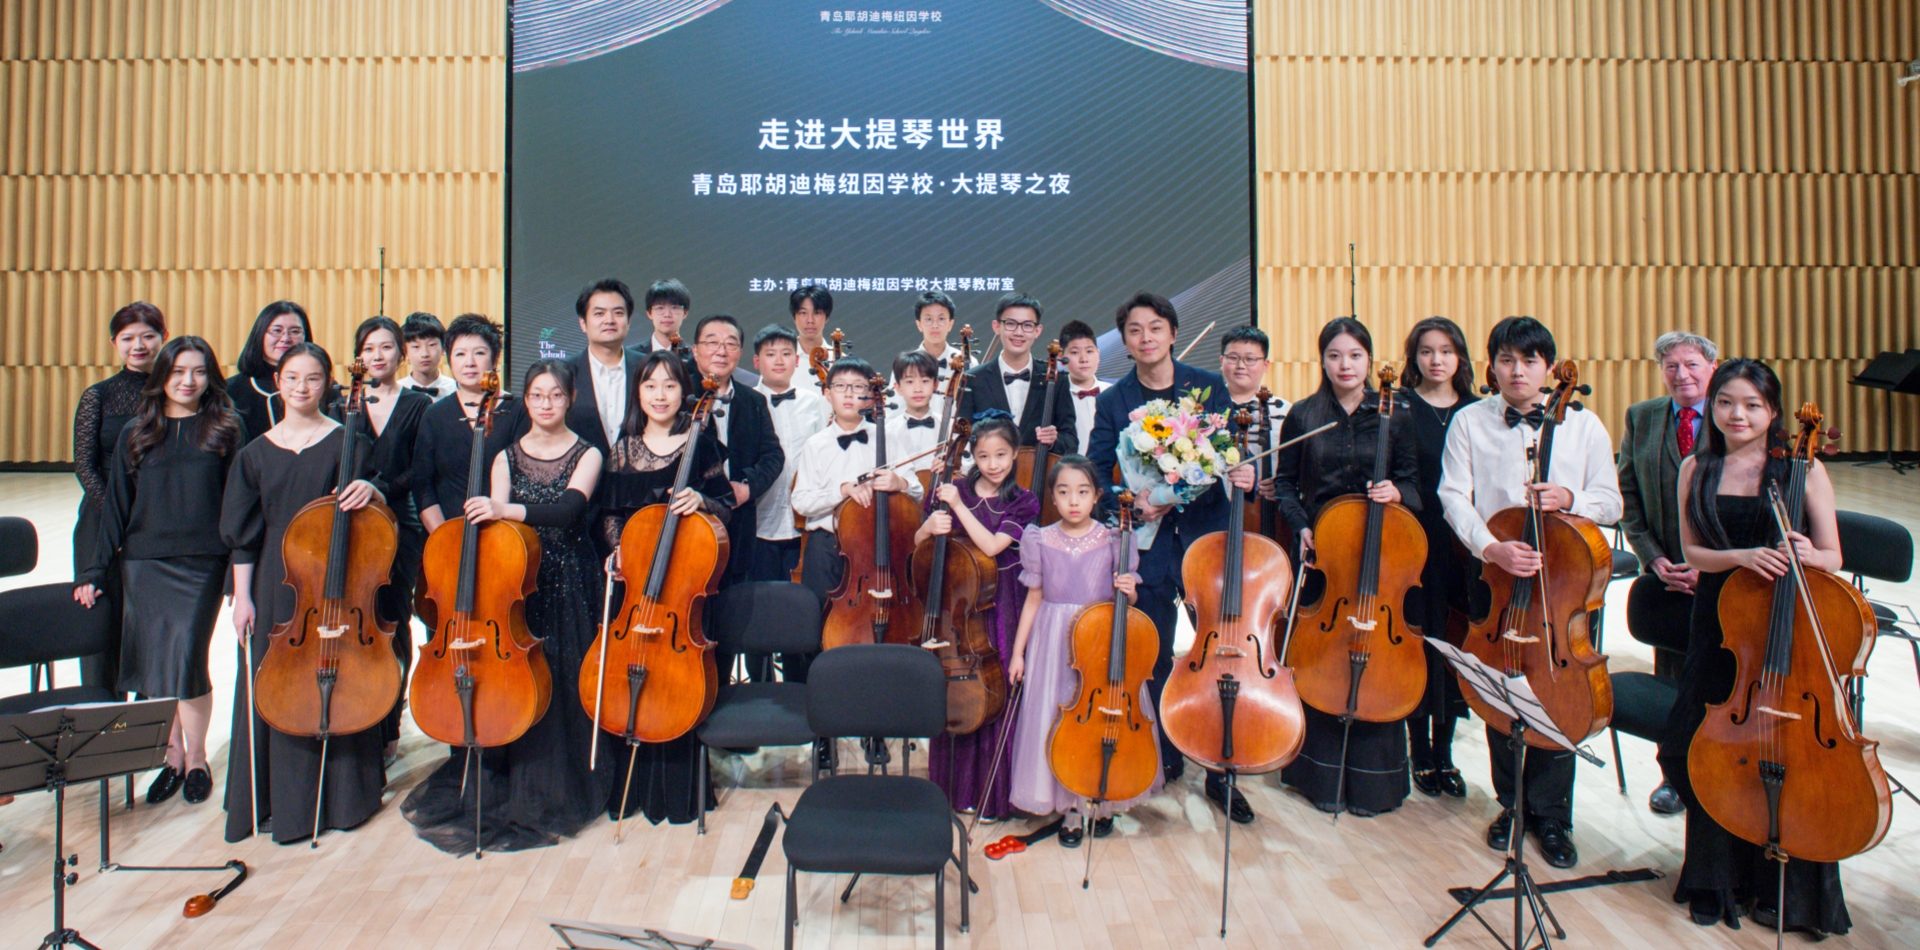 走进大提琴世界—-青岛耶胡迪梅纽因学校·大提琴之夜倾情演绎